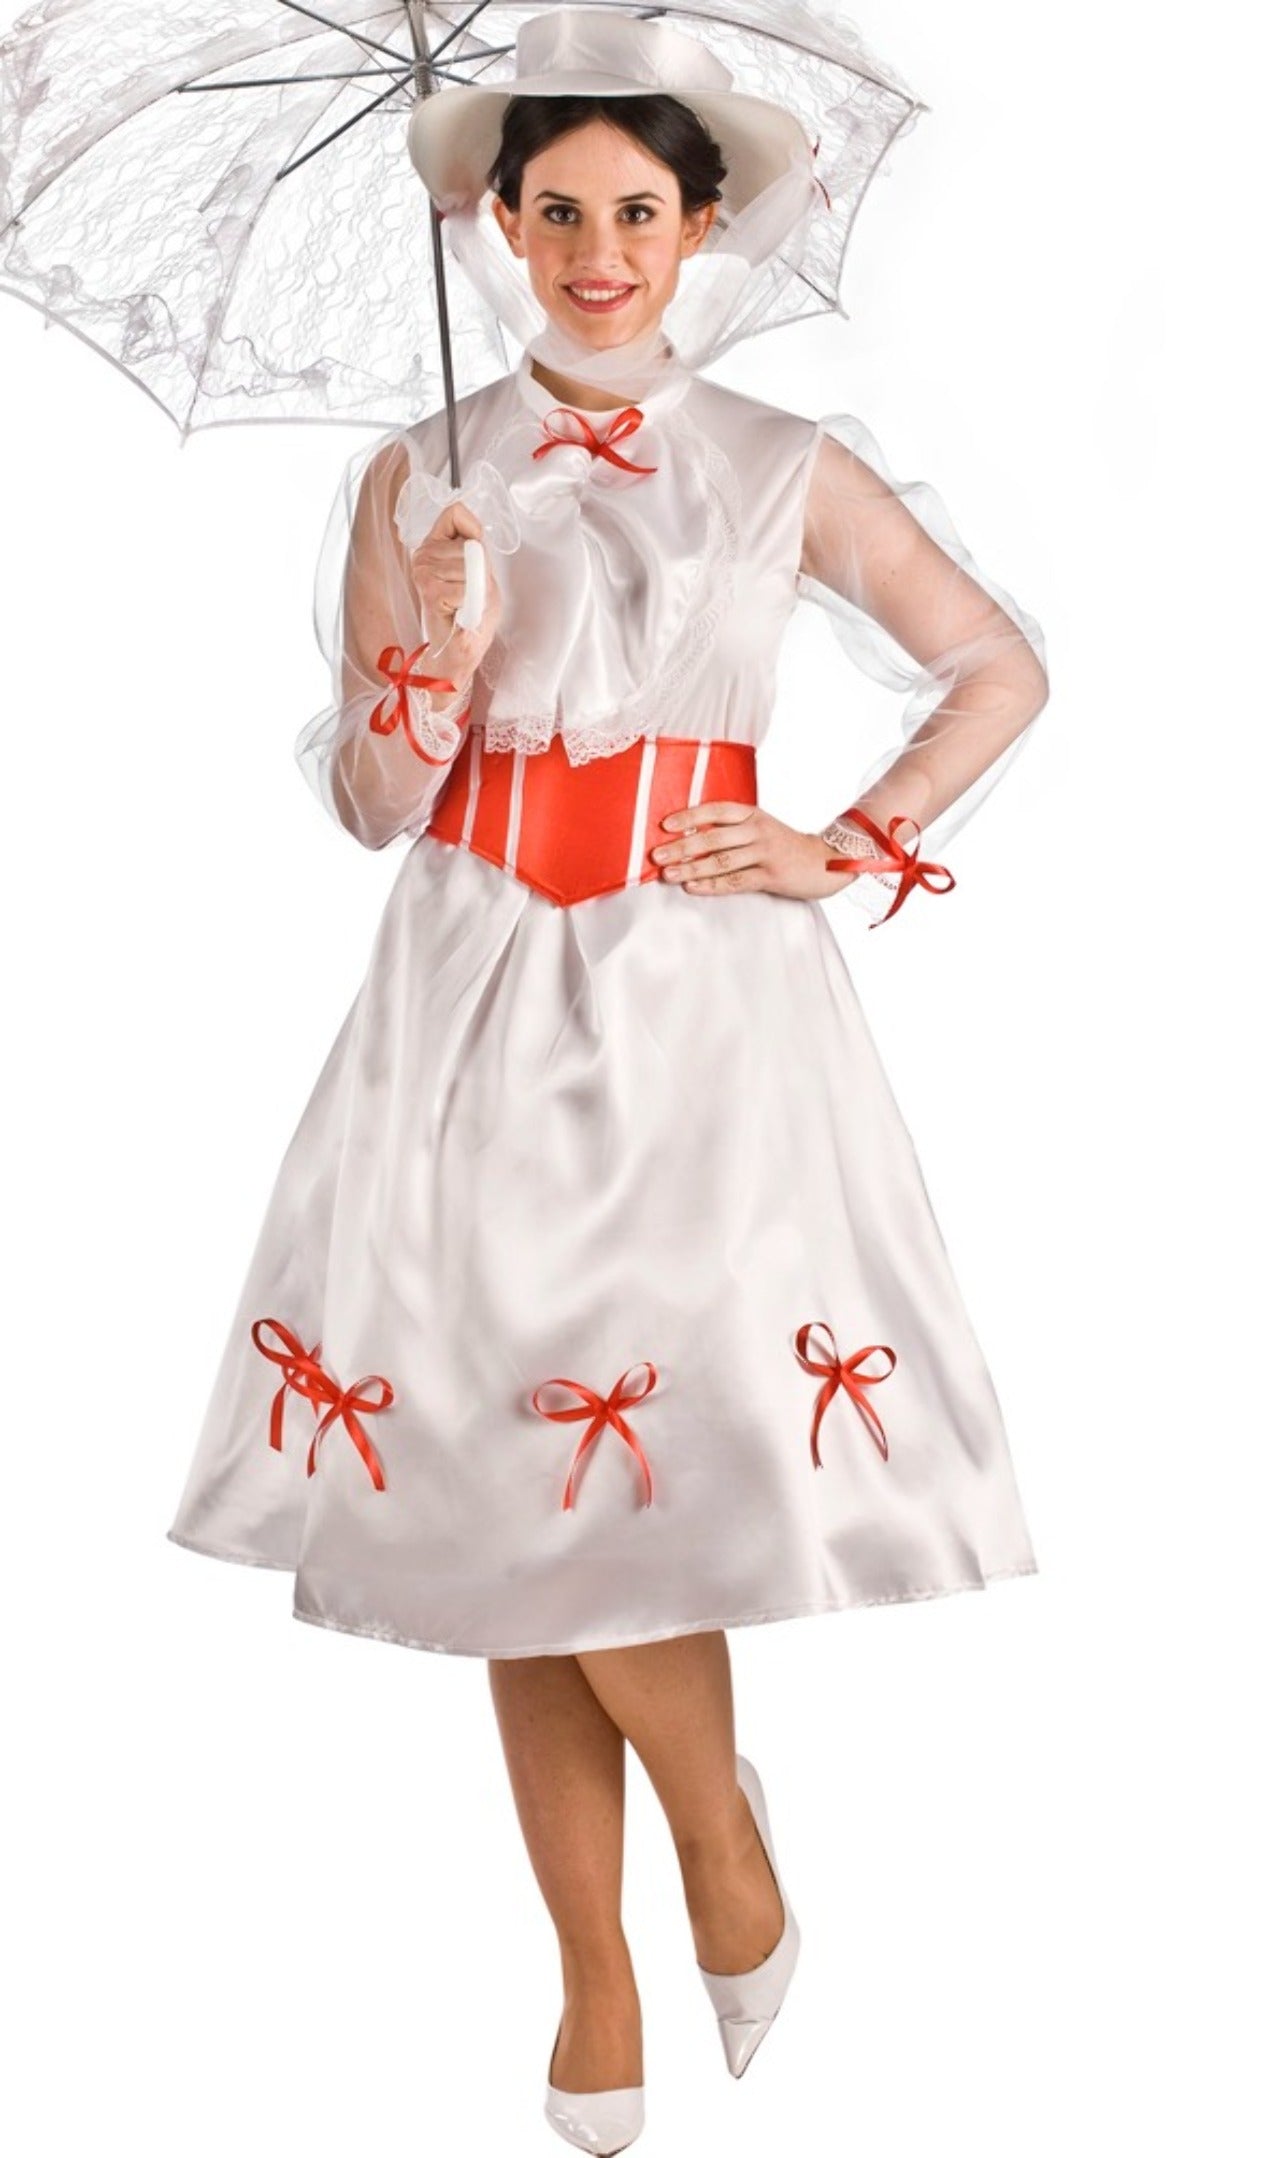 Costume da Mary Poppins per il ritorno